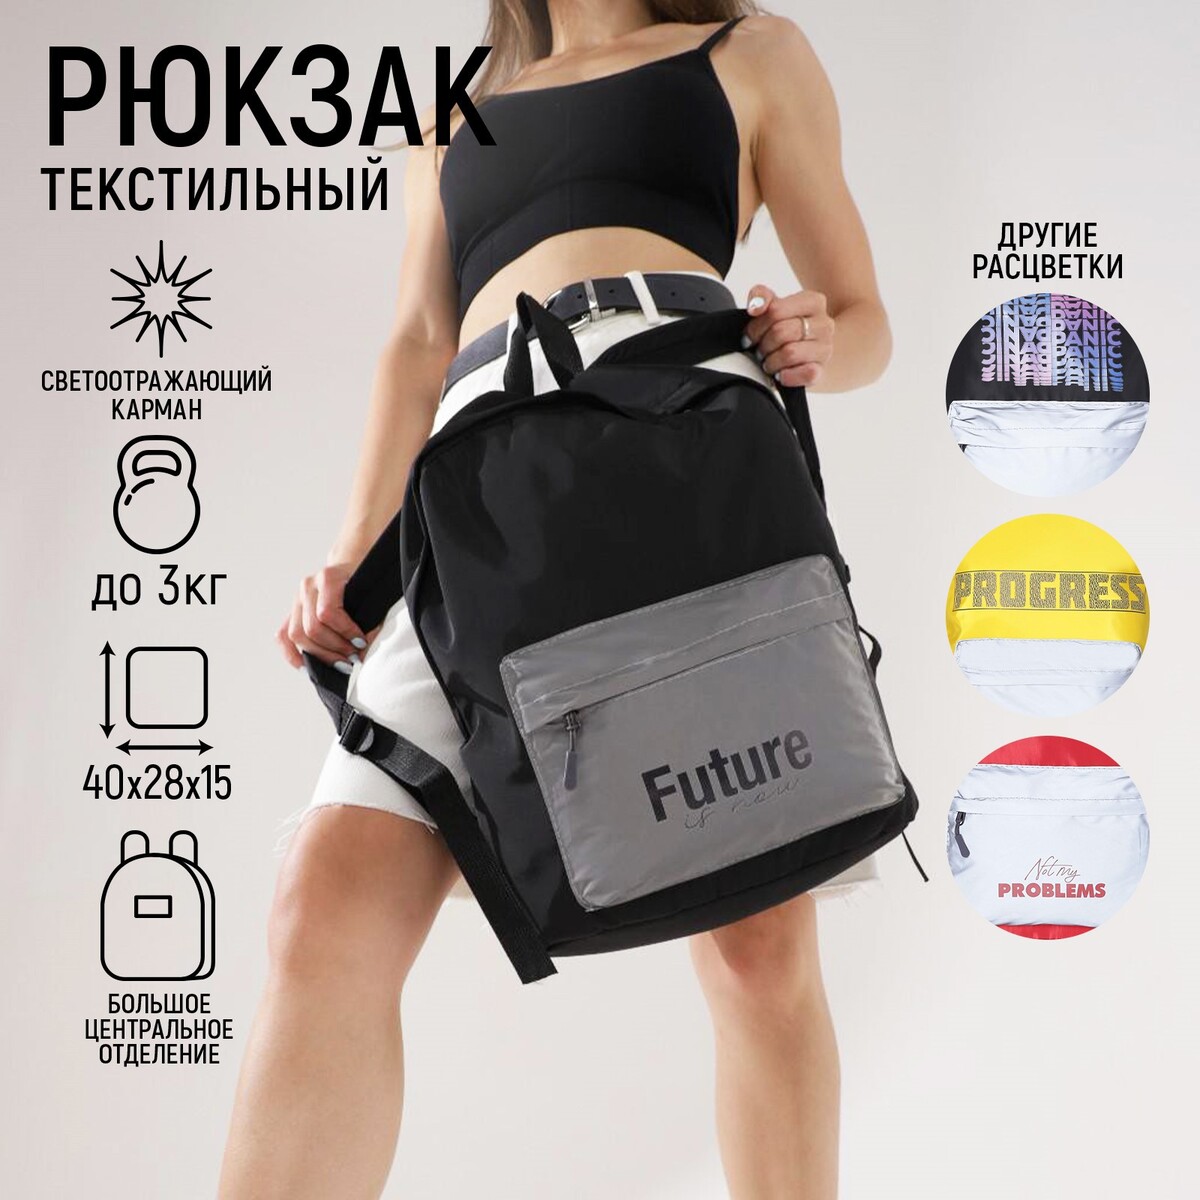 Рюкзак со светоотражающим карманом future is now рюкзак со светоотражающим карманом progress